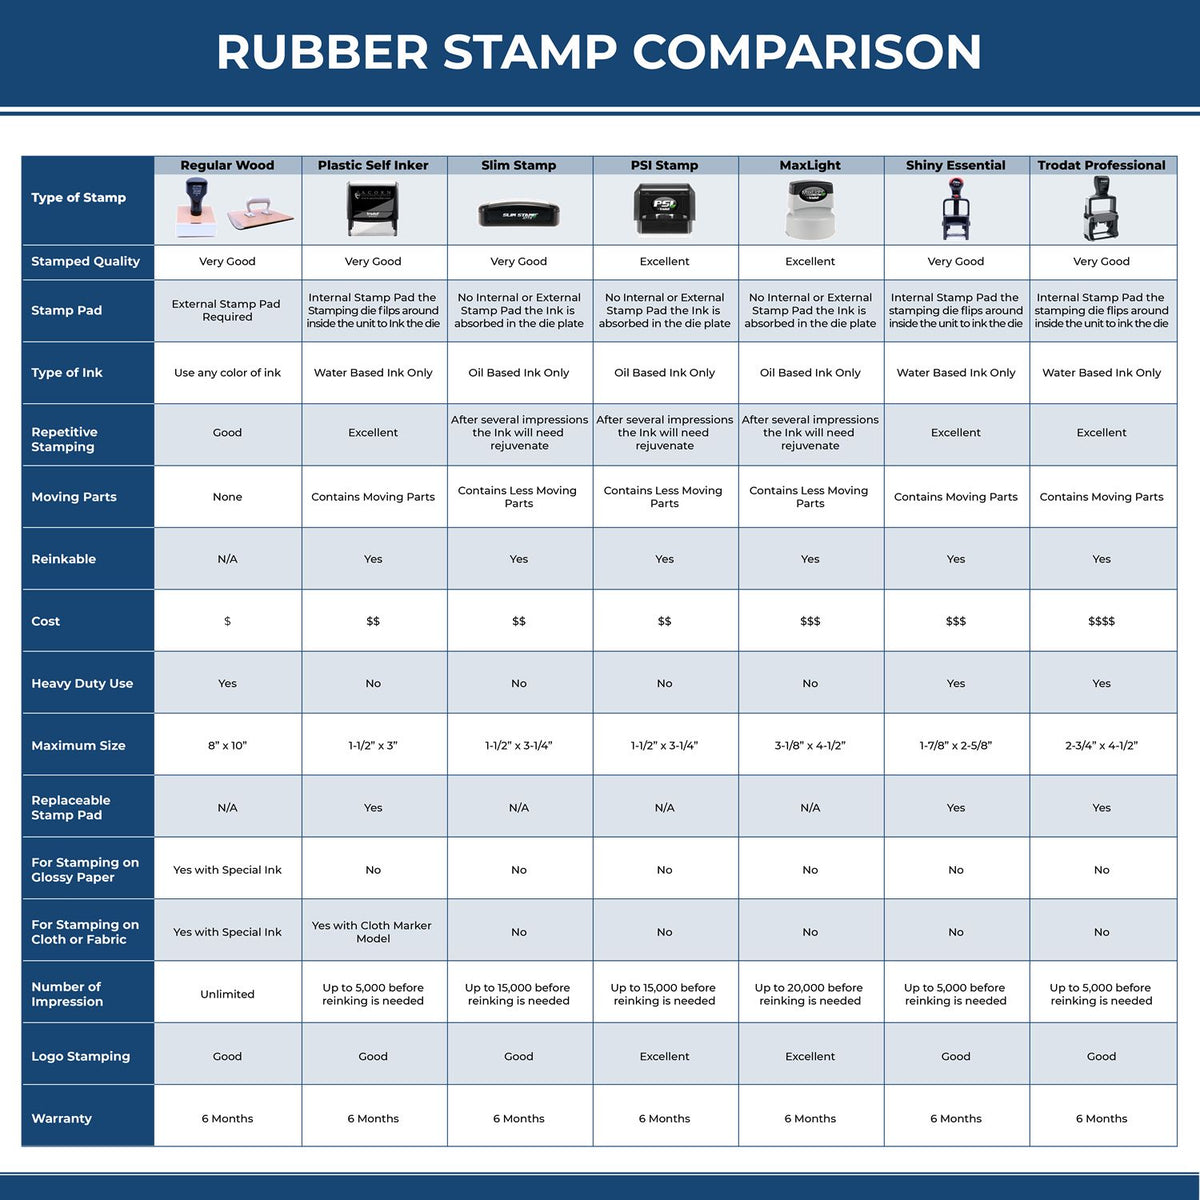 Fax It 1 Rubber Stamp 4159R Rubber Stamp Comparison